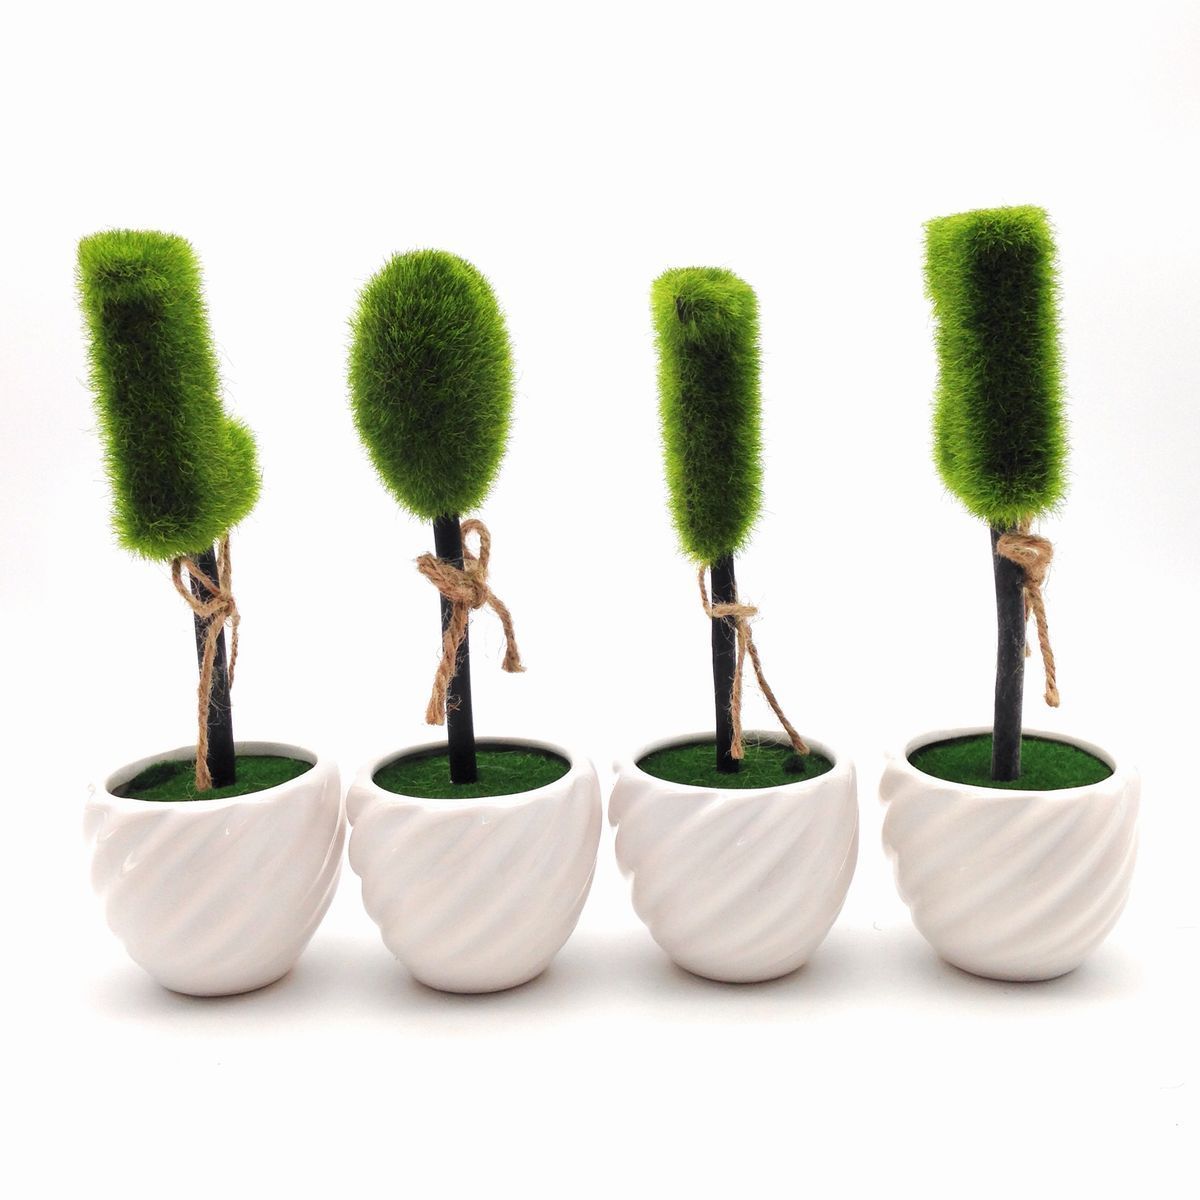  искусственная зелень LOVE Mini декоративное растение белый контейнер 4 шт. комплект 